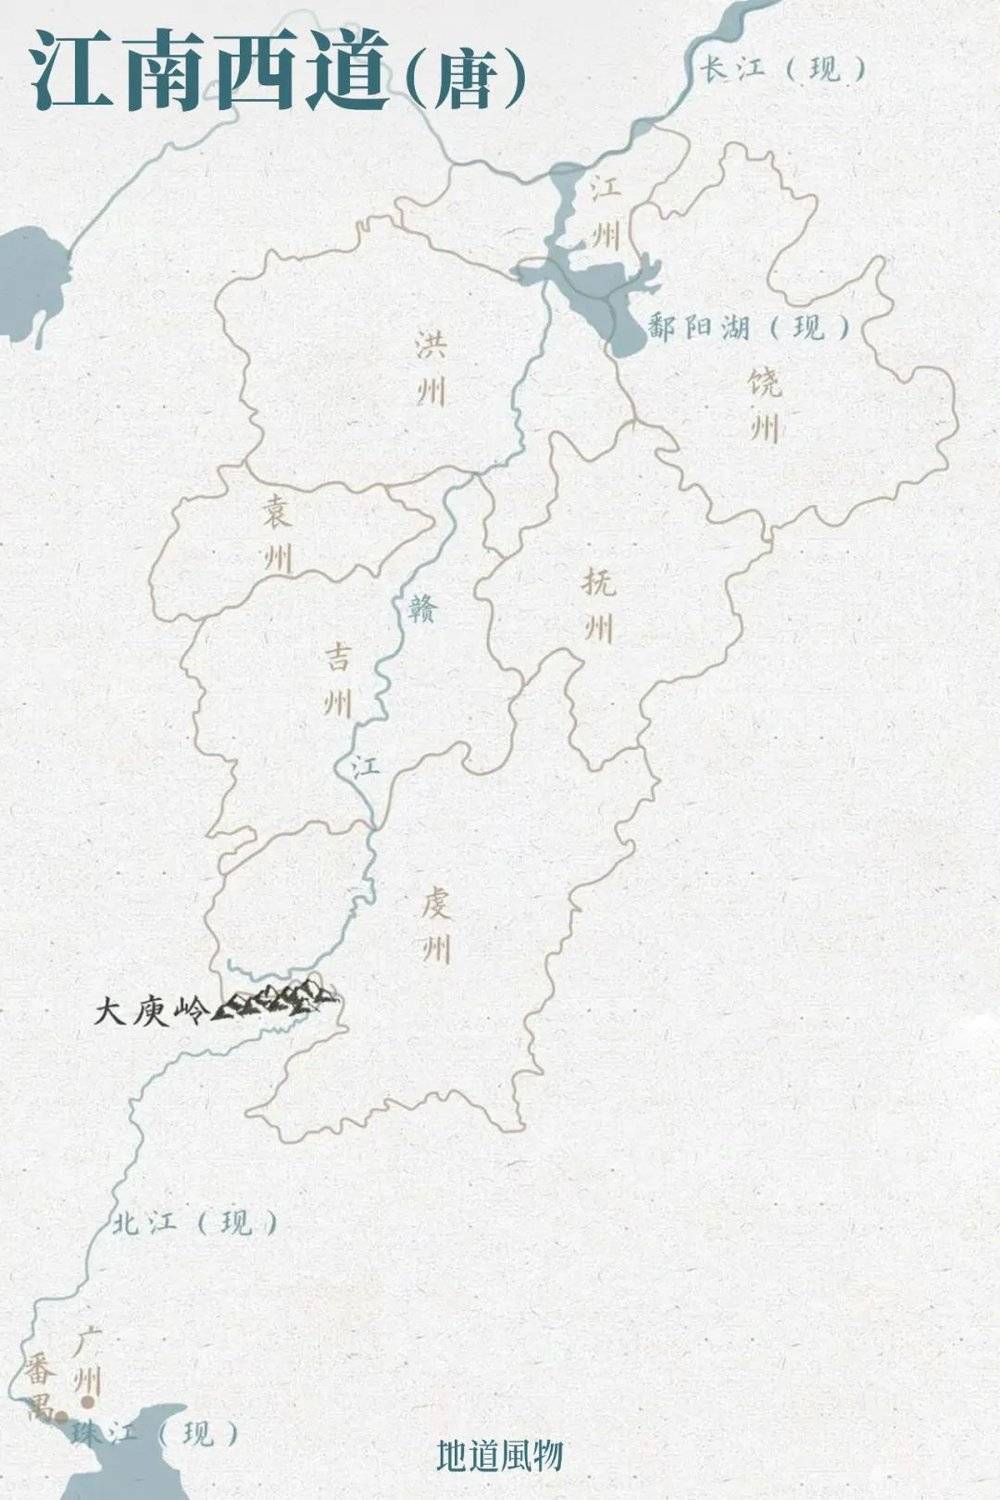 梅关古道的开通不仅加强了广东与外界的联系，同样打通了隔壁江西的“任督二脉”，使得两地经济迅速发展。制图/Paprika